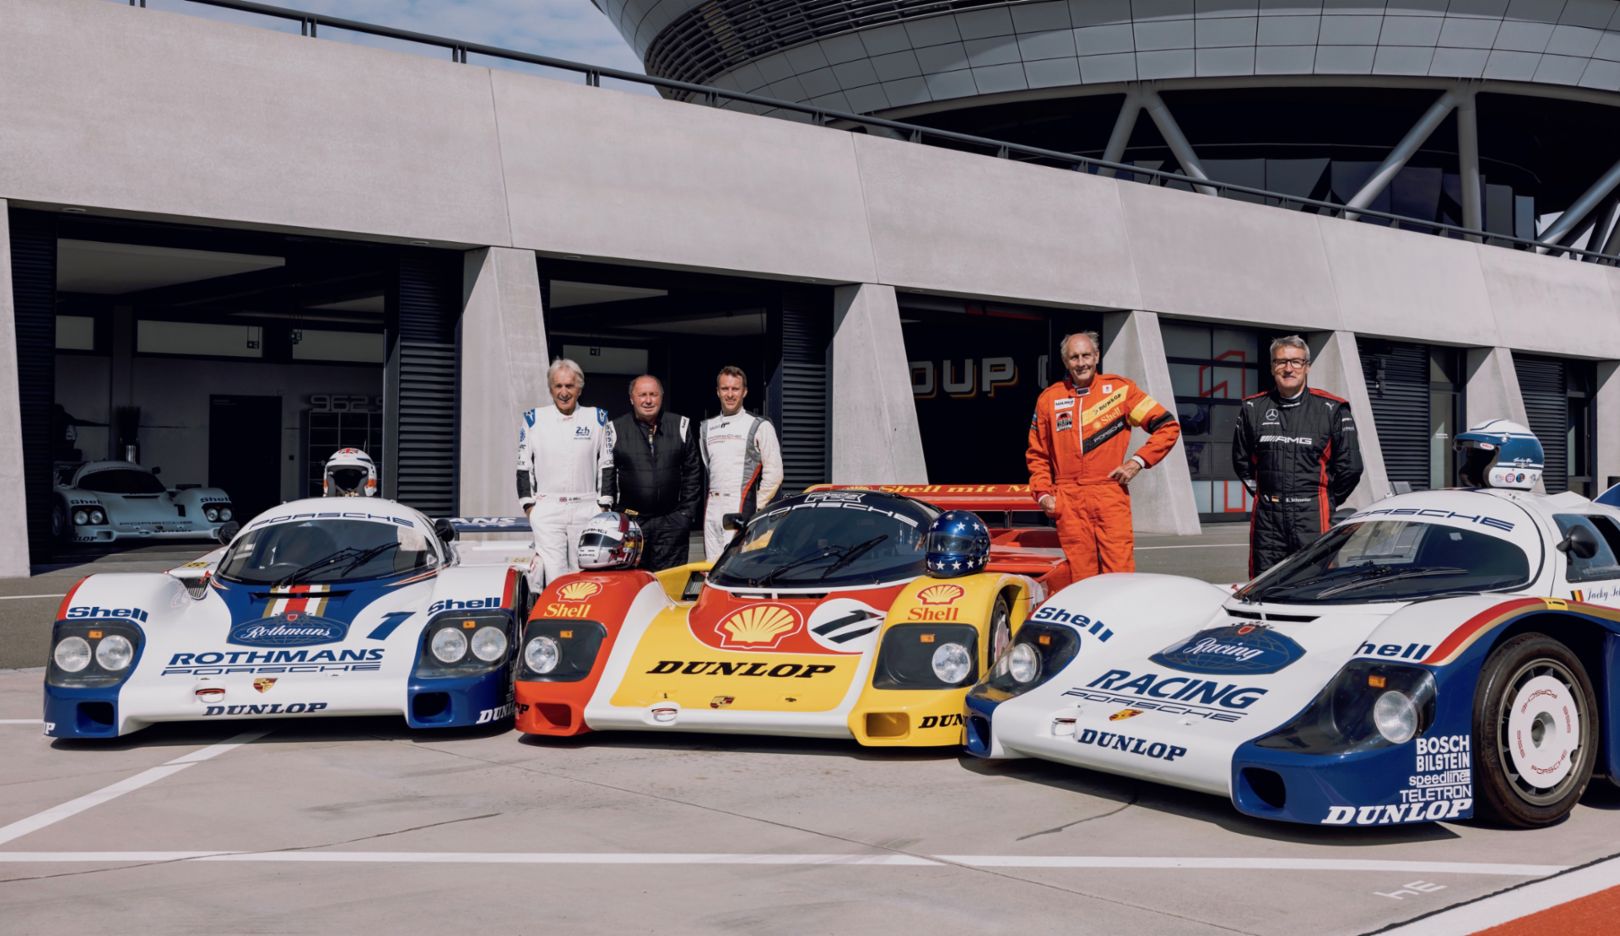 Gruppe-C-Fahrer: Derek Bell, Jochen Mass, Timo Bernhard, Hans-Joachim Stuck, Bernd Schneider, l-r, 2022, Porsche AG